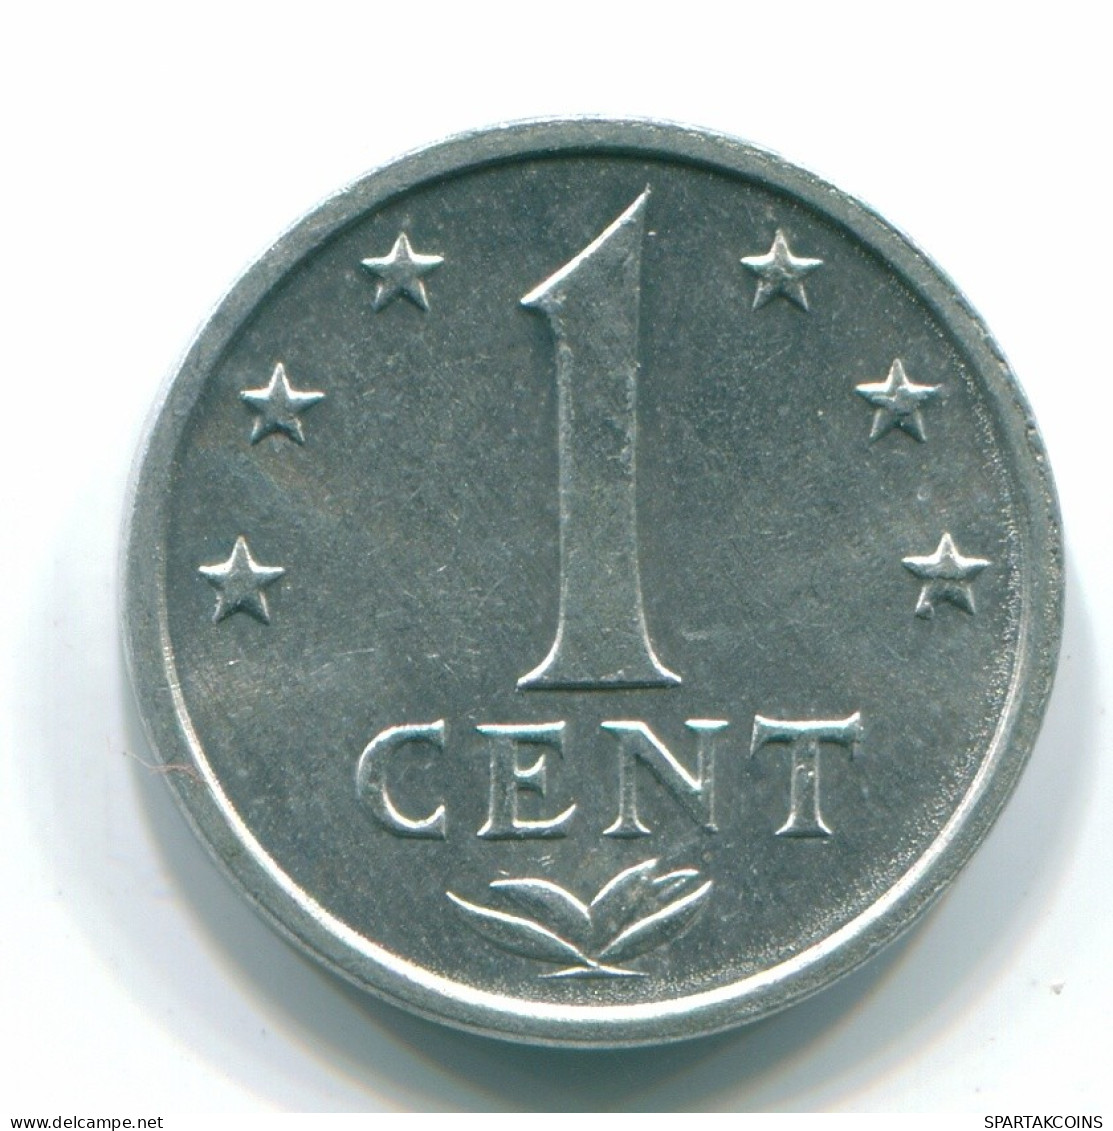 1 CENT 1980 NETHERLANDS ANTILLES Aluminium Colonial Coin #S11188.U.A - Netherlands Antilles